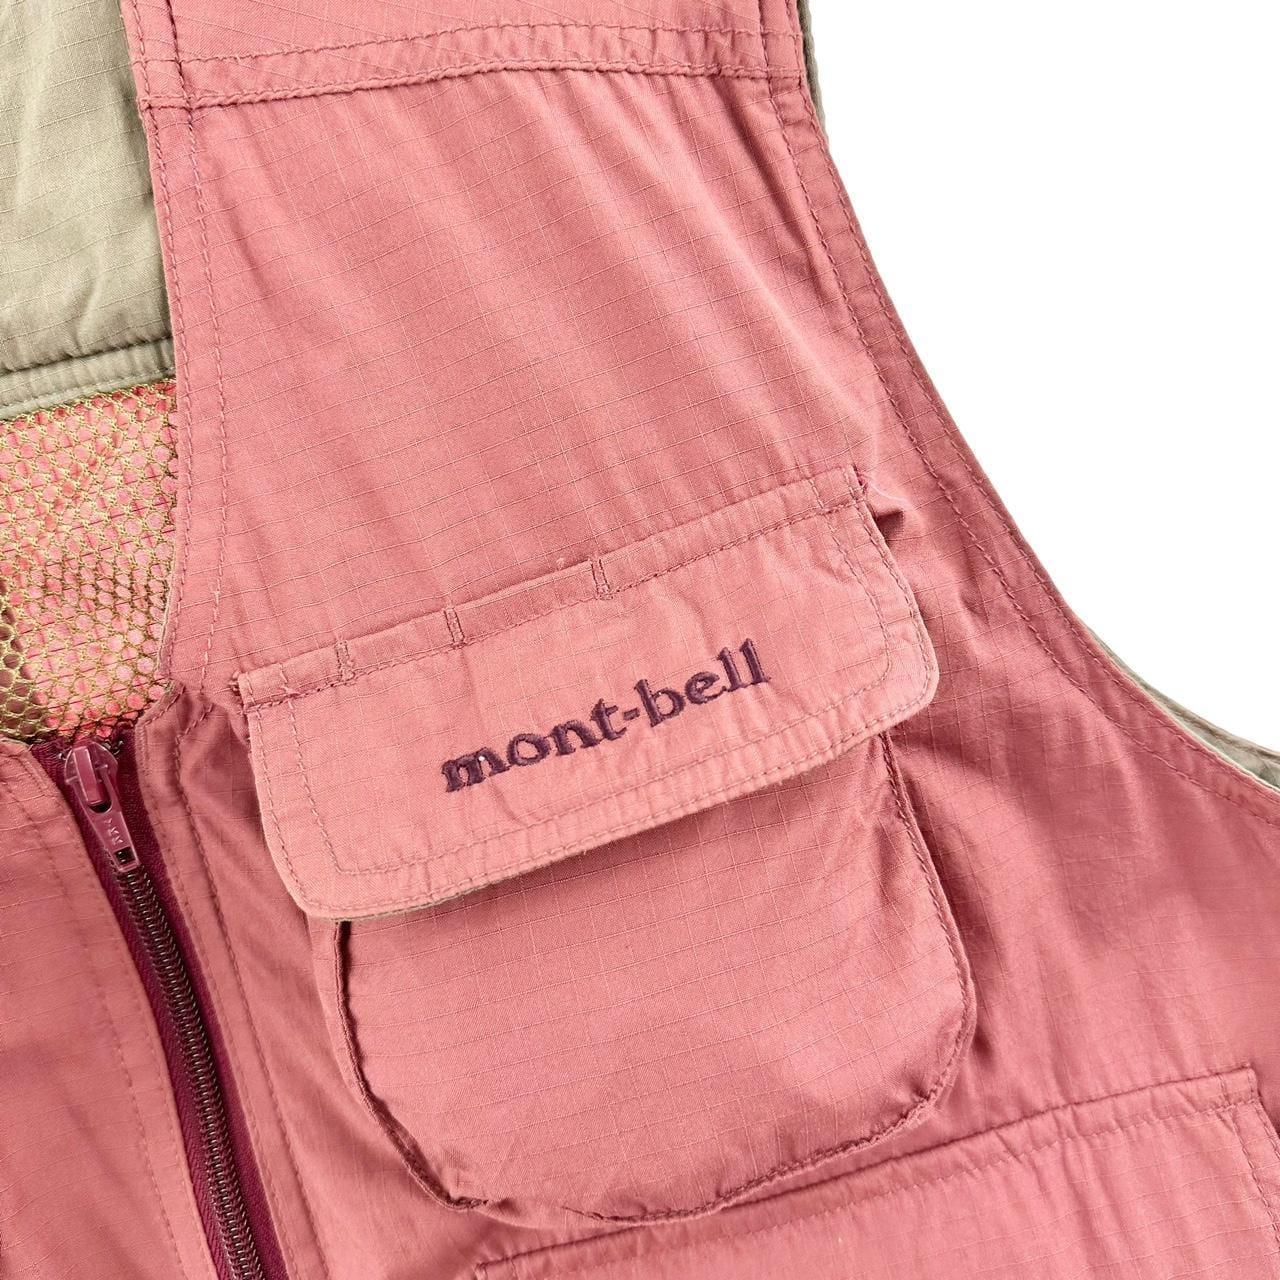 Vintage Montbell pocket vest size S - Known Source